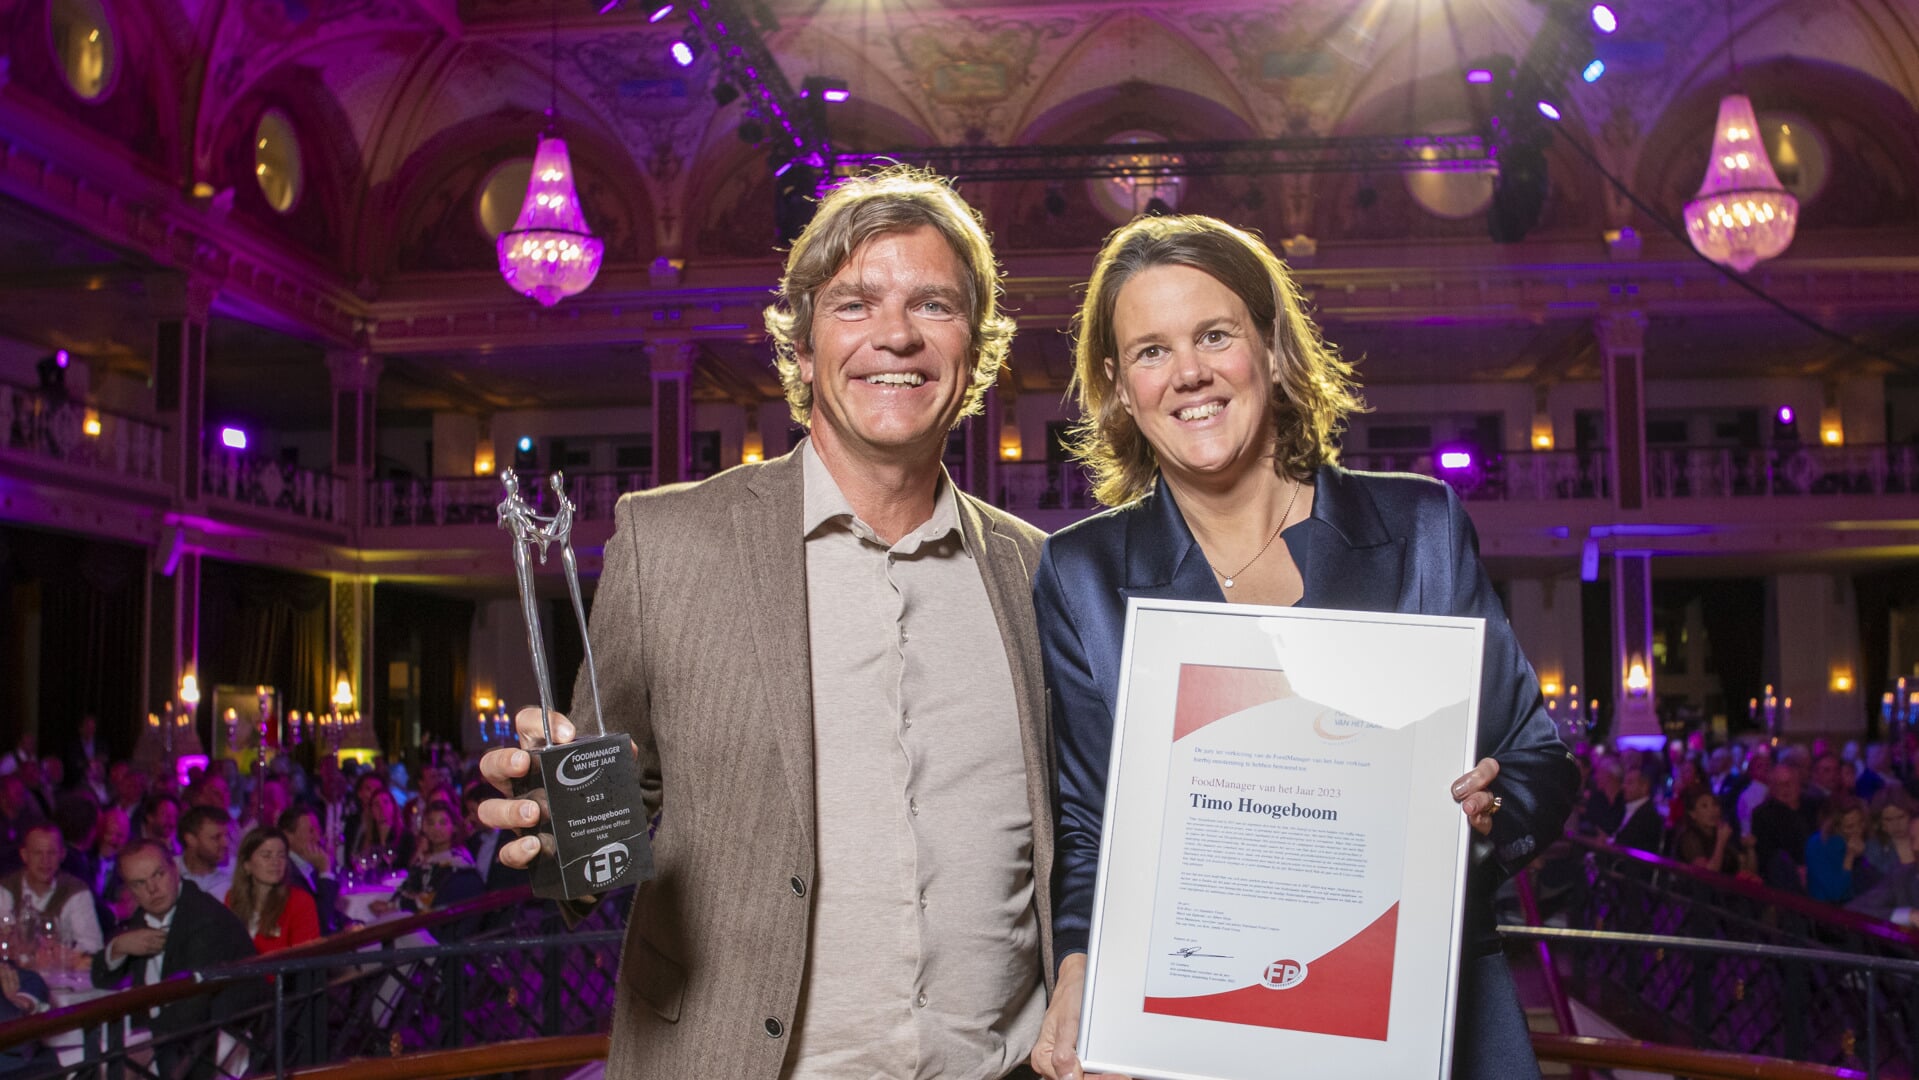 Timo Hoogeboom (ex-ceo Hak) heeft hier zojuist uit handen van Marit van Egmond (ceo Albert Heijn) de award en oorkonde behorend bij de titel Foodmanager van het Jaar ontvangen.